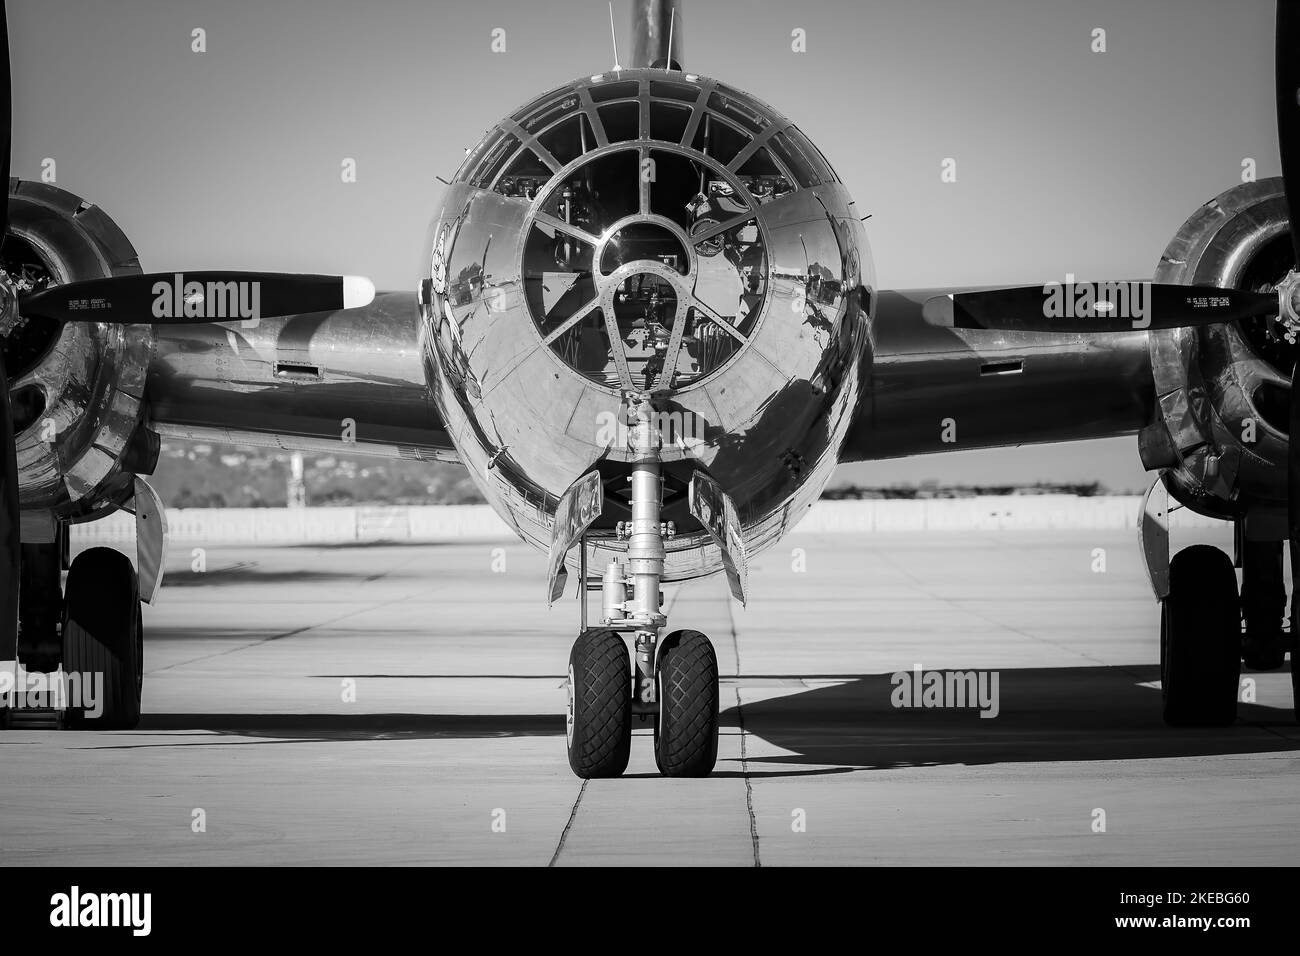 Die Nase einer B-29 Superfortrees, die 1944 gebaut wurde und den Namen Doc trägt, die auf dem Asphalt sitzt und auf Touristen wartet, die zur Miramar Airshow 2022 in S ankommen Stockfoto